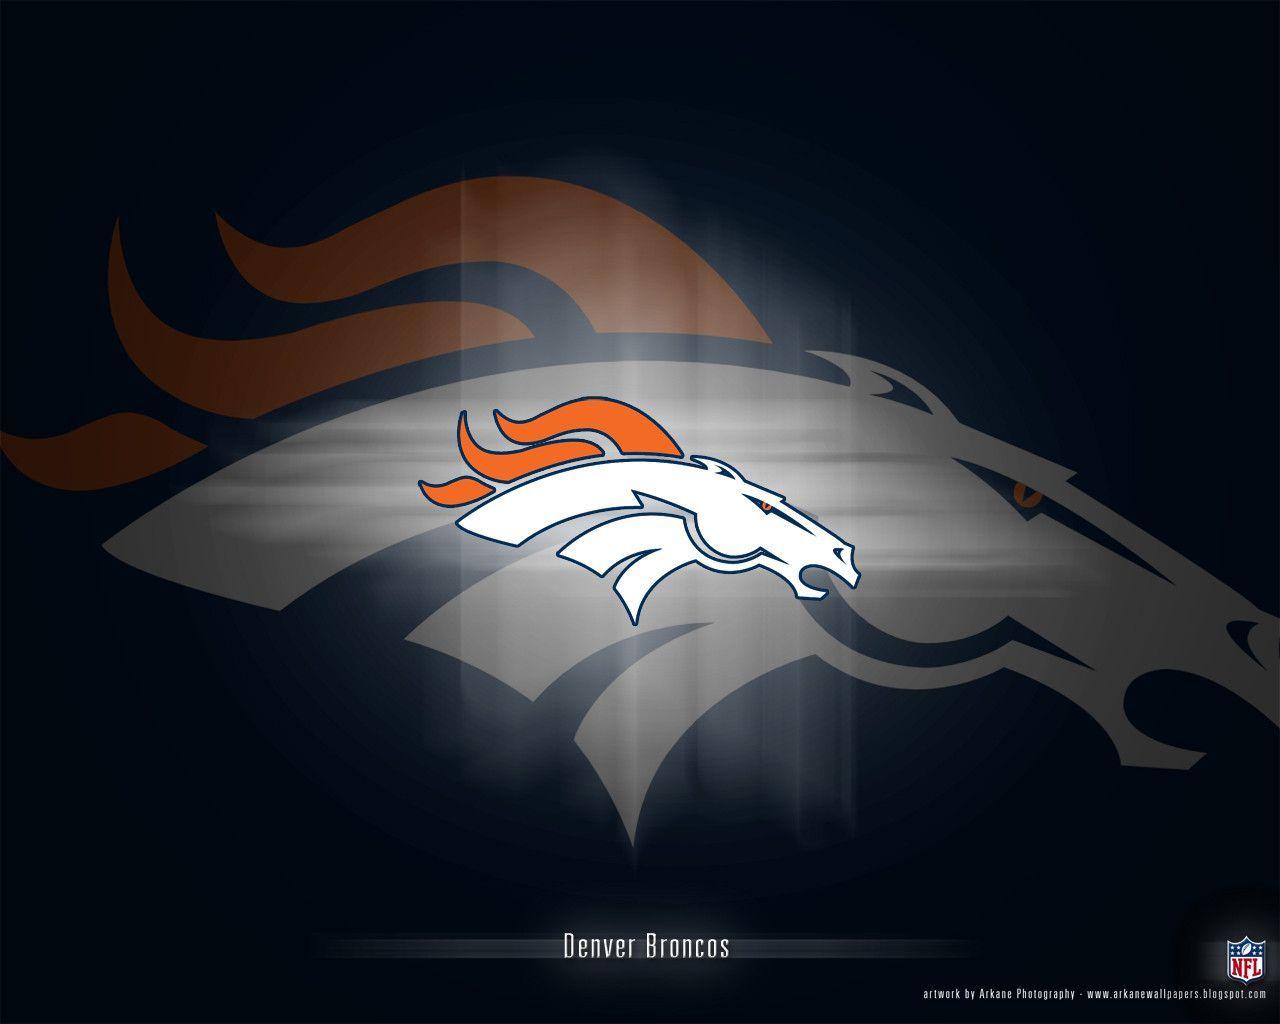 Denver Broncos Desktop Background HD 24762 Image. largepict